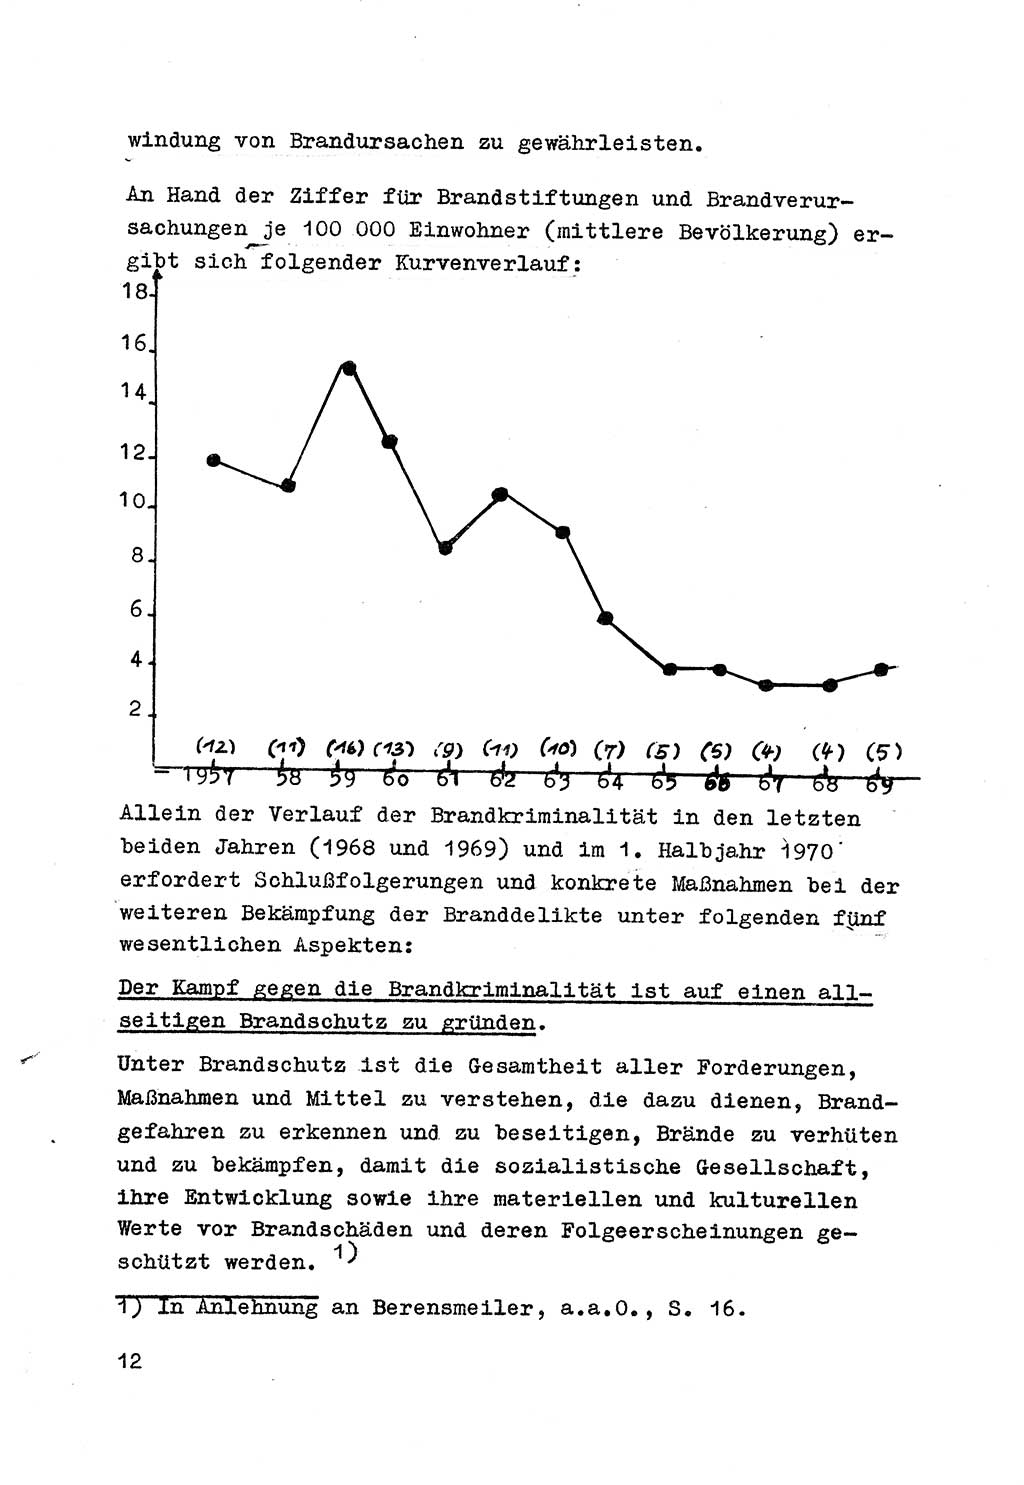 Strafrecht der DDR (Deutsche Demokratische Republik), Besonderer Teil, Lehrmaterial, Heft 7 1970, Seite 12 (Strafr. DDR BT Lehrmat. H. 7 1970, S. 12)